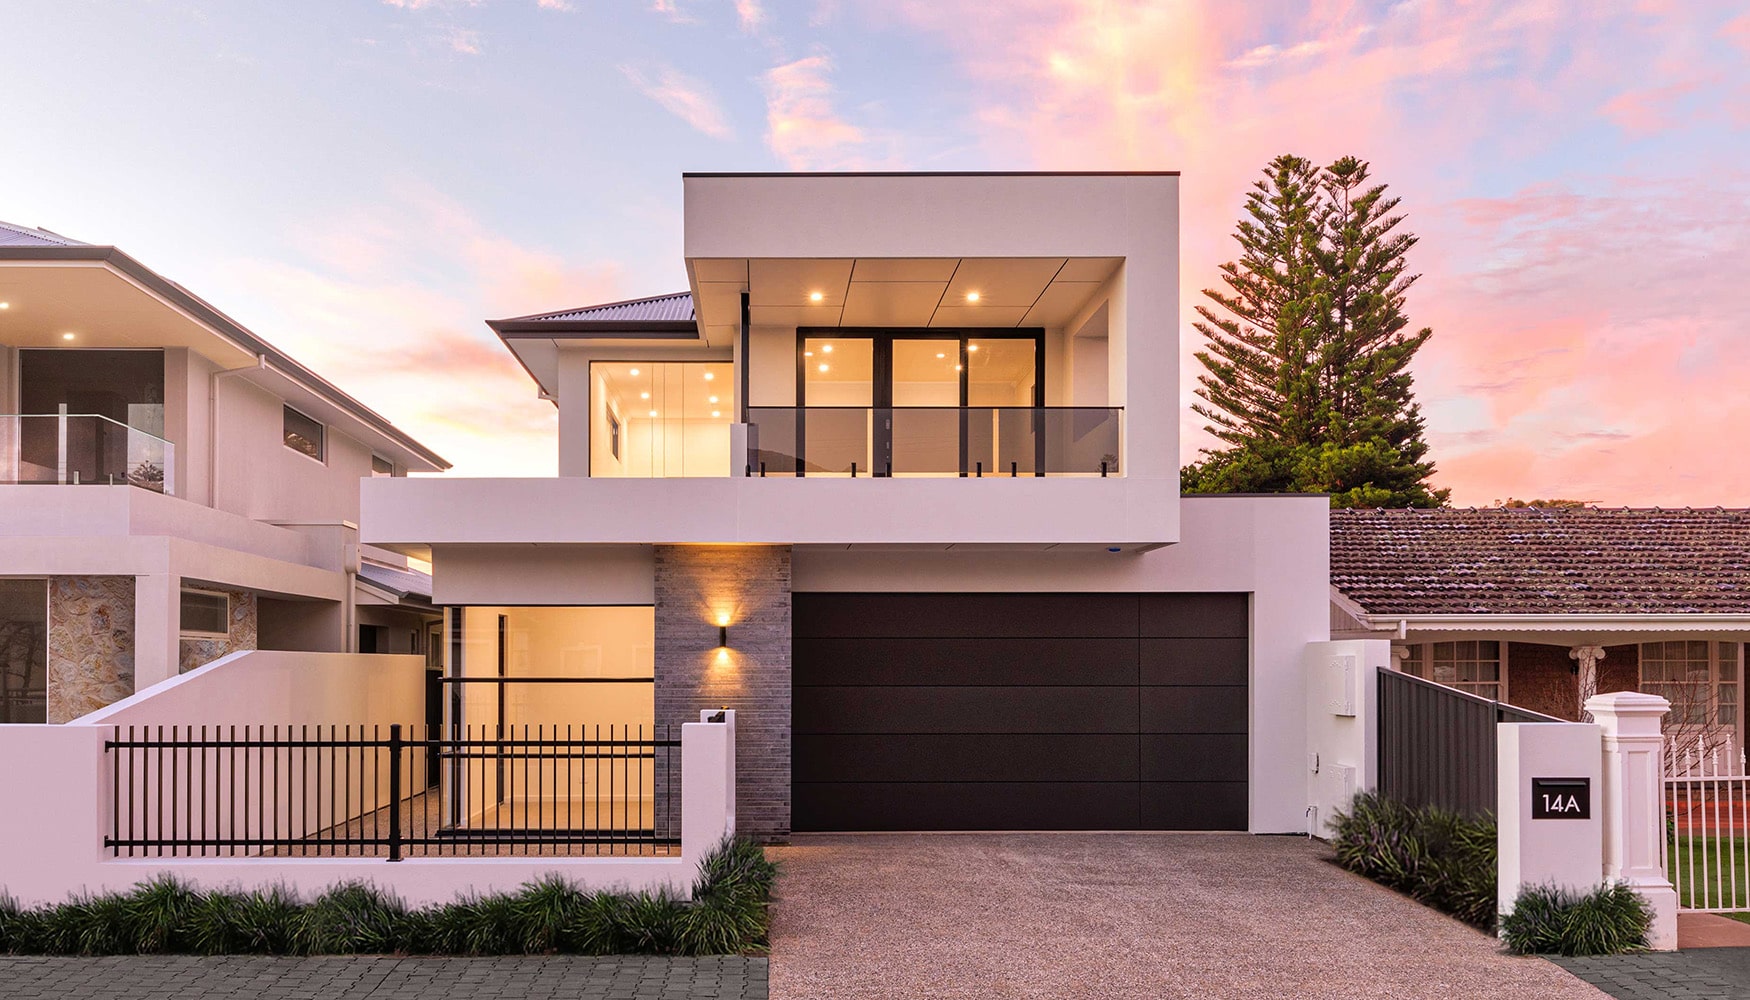 Normus-Homes custom home builders Adelaide